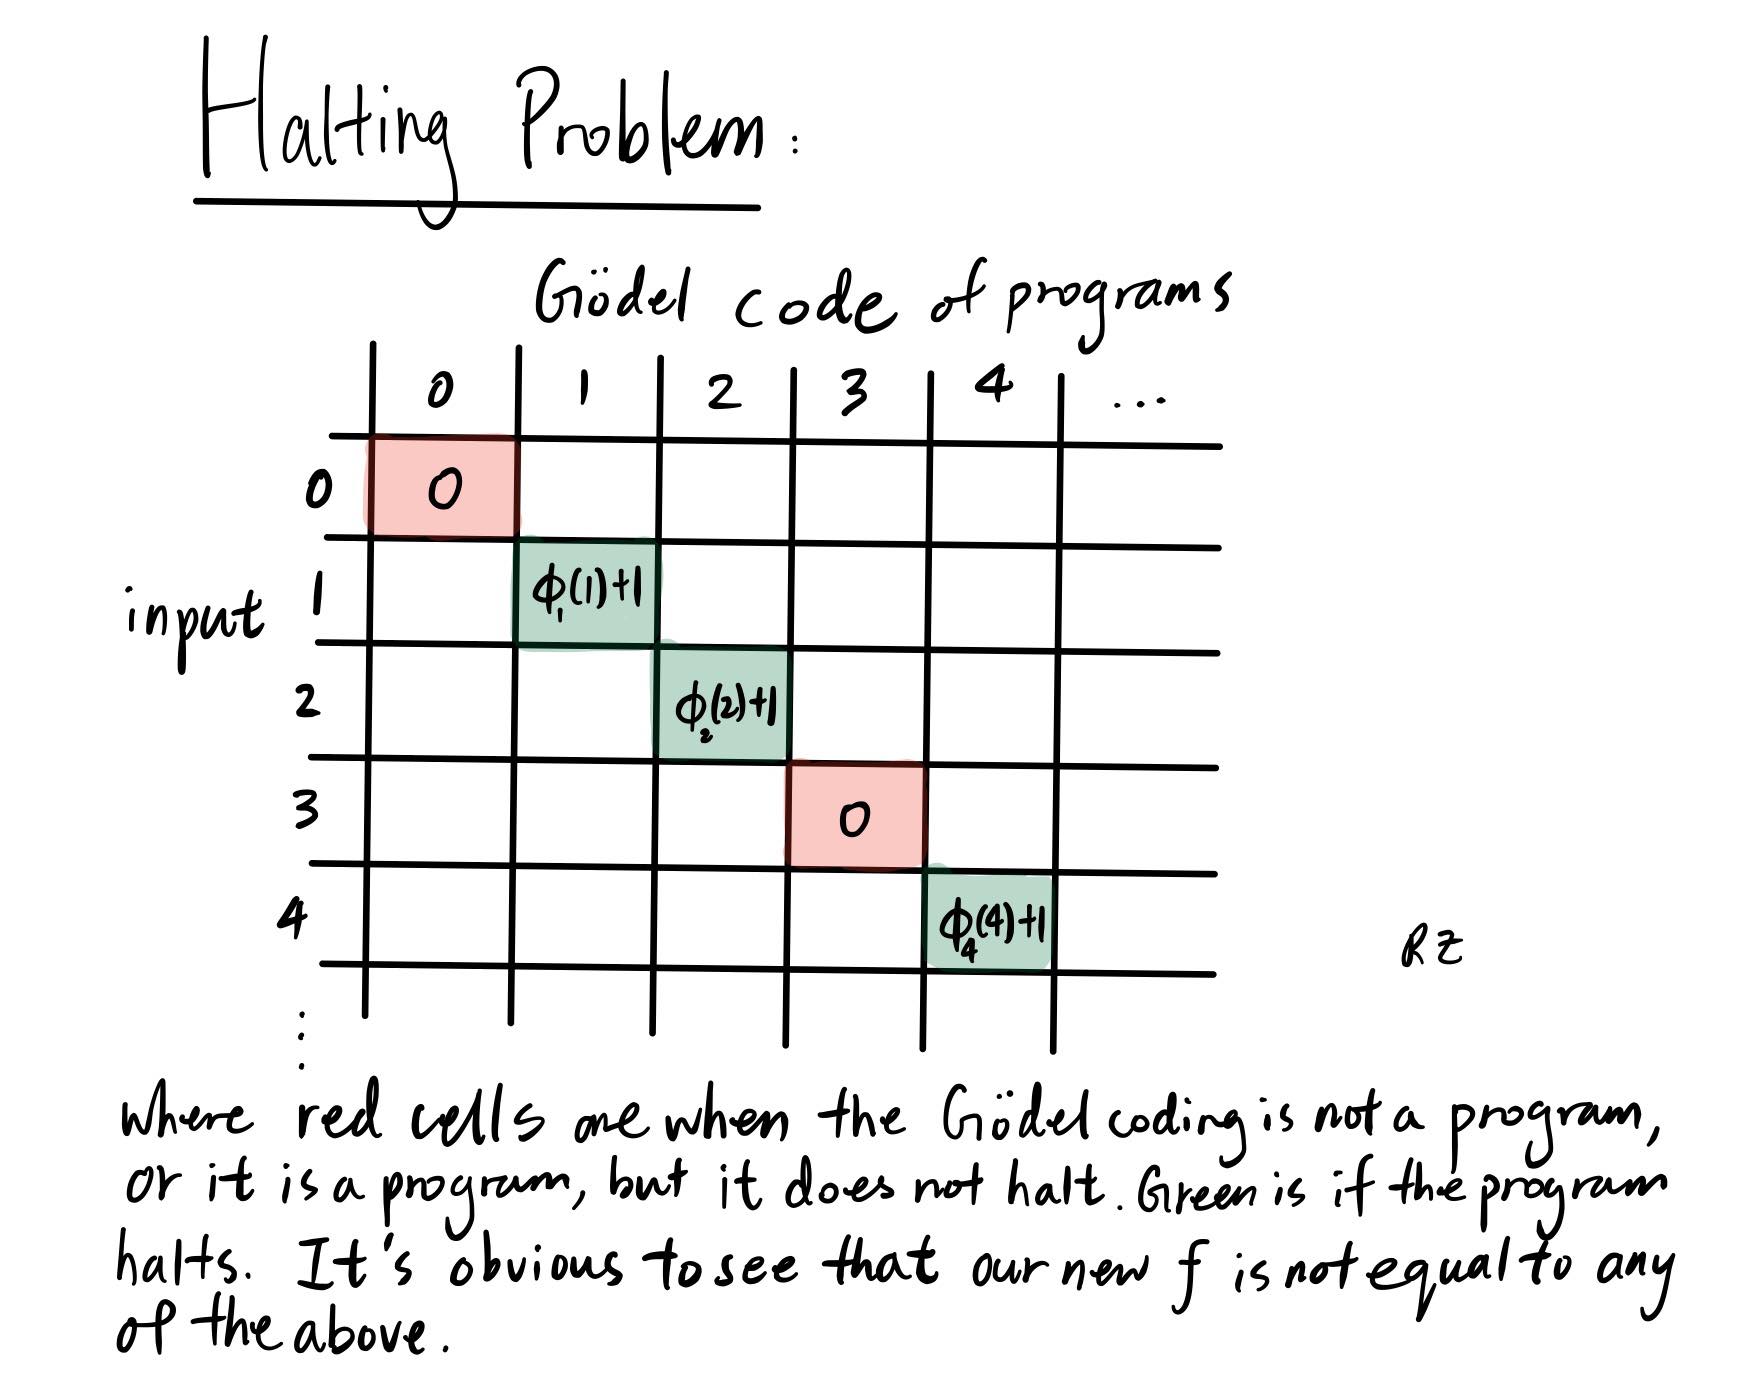 halting problem